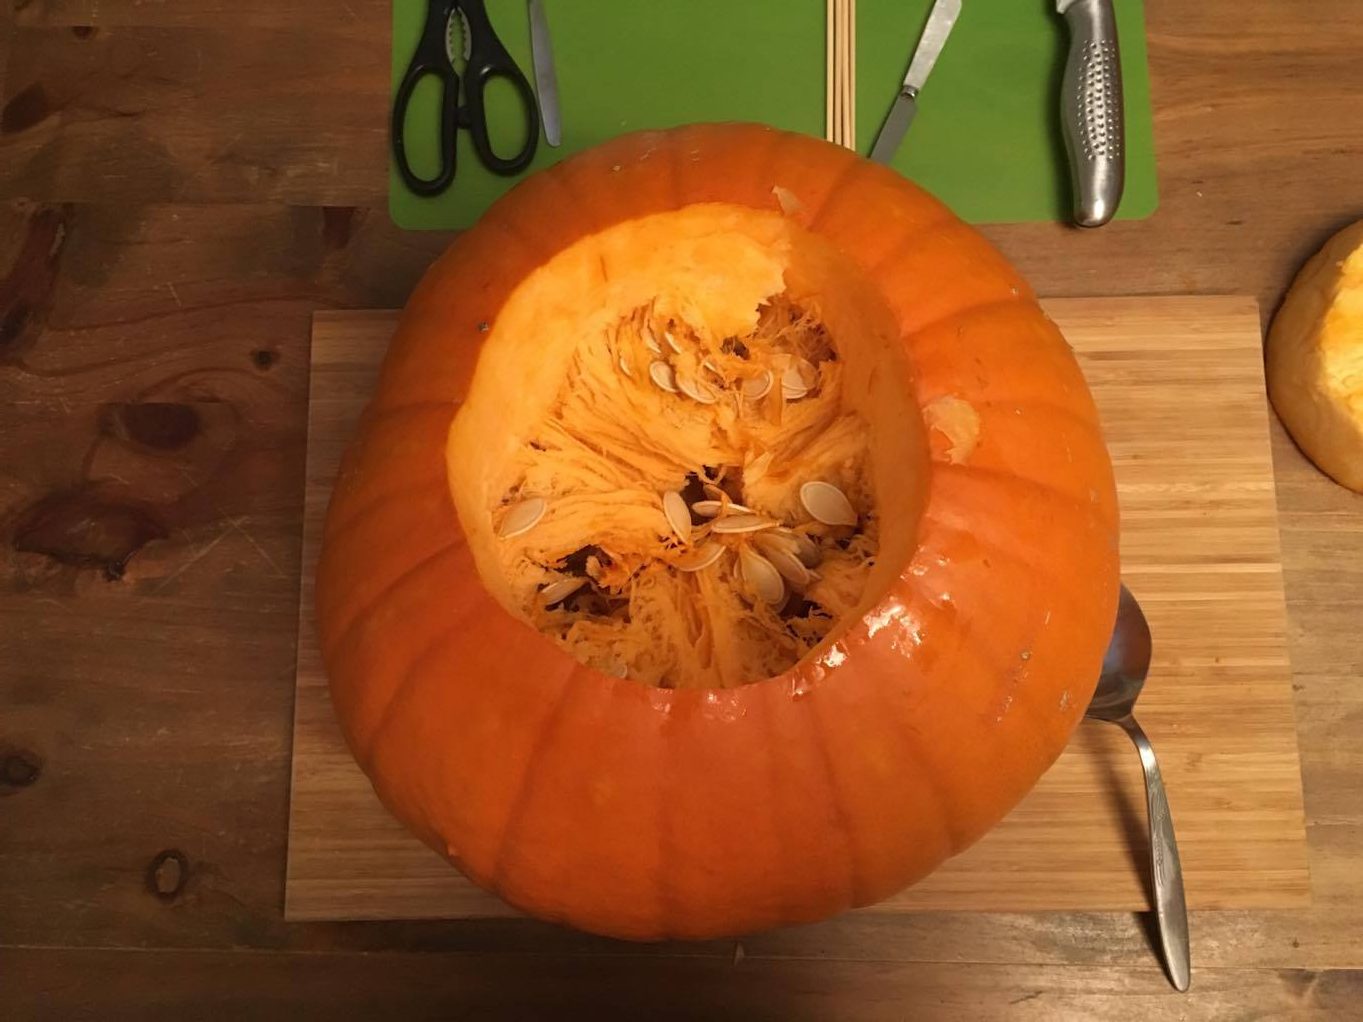 the inside of a pumpkin